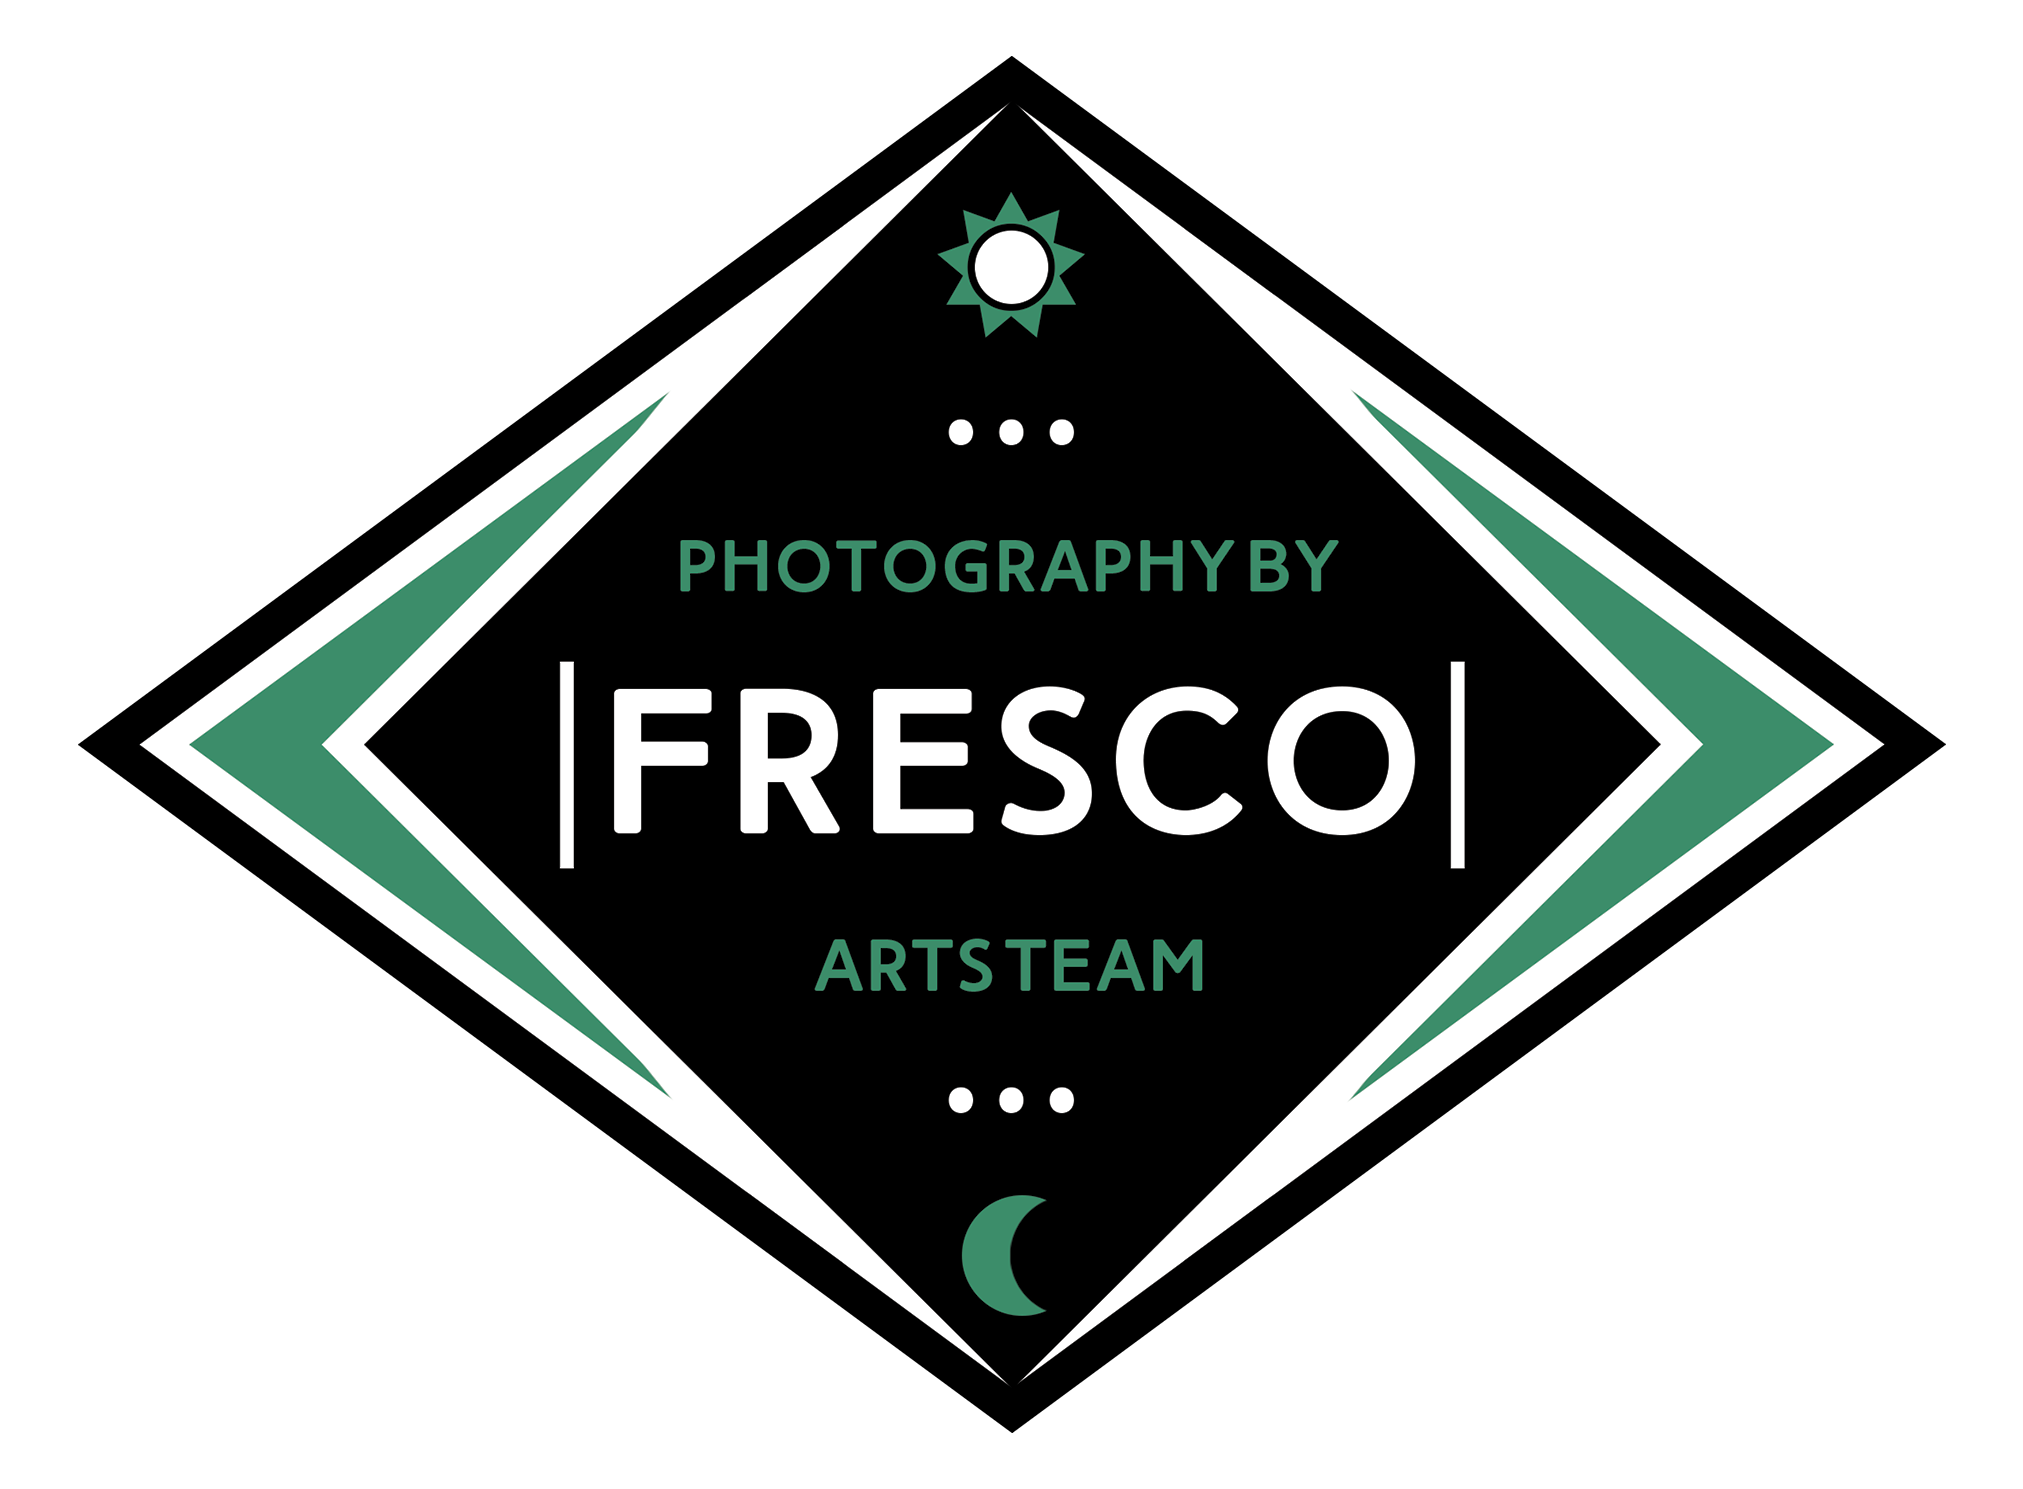 Fresco Arts Team